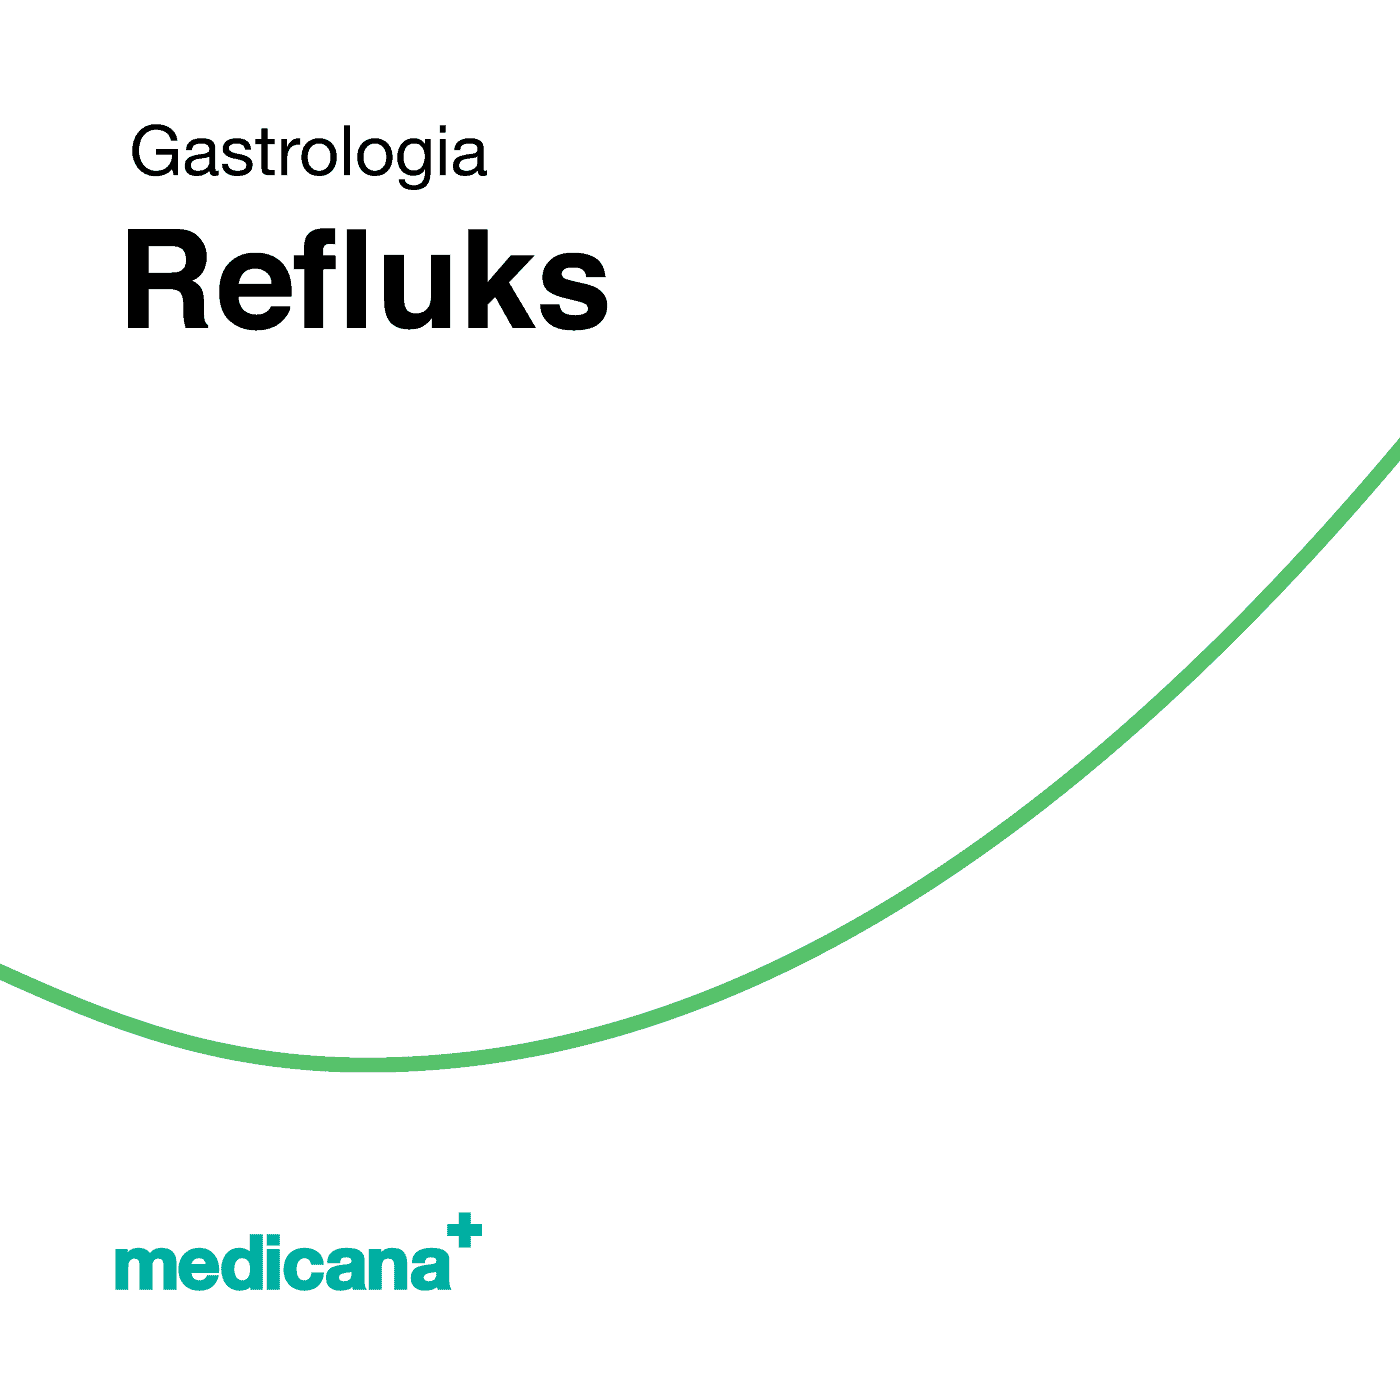 Grafika, białe tło z zieloną kreską, czarnym napisem Gastrologia - Refluks i logo Medicana Centrum Terapii Medyczna Marihuana w lewym dolnym rogu.